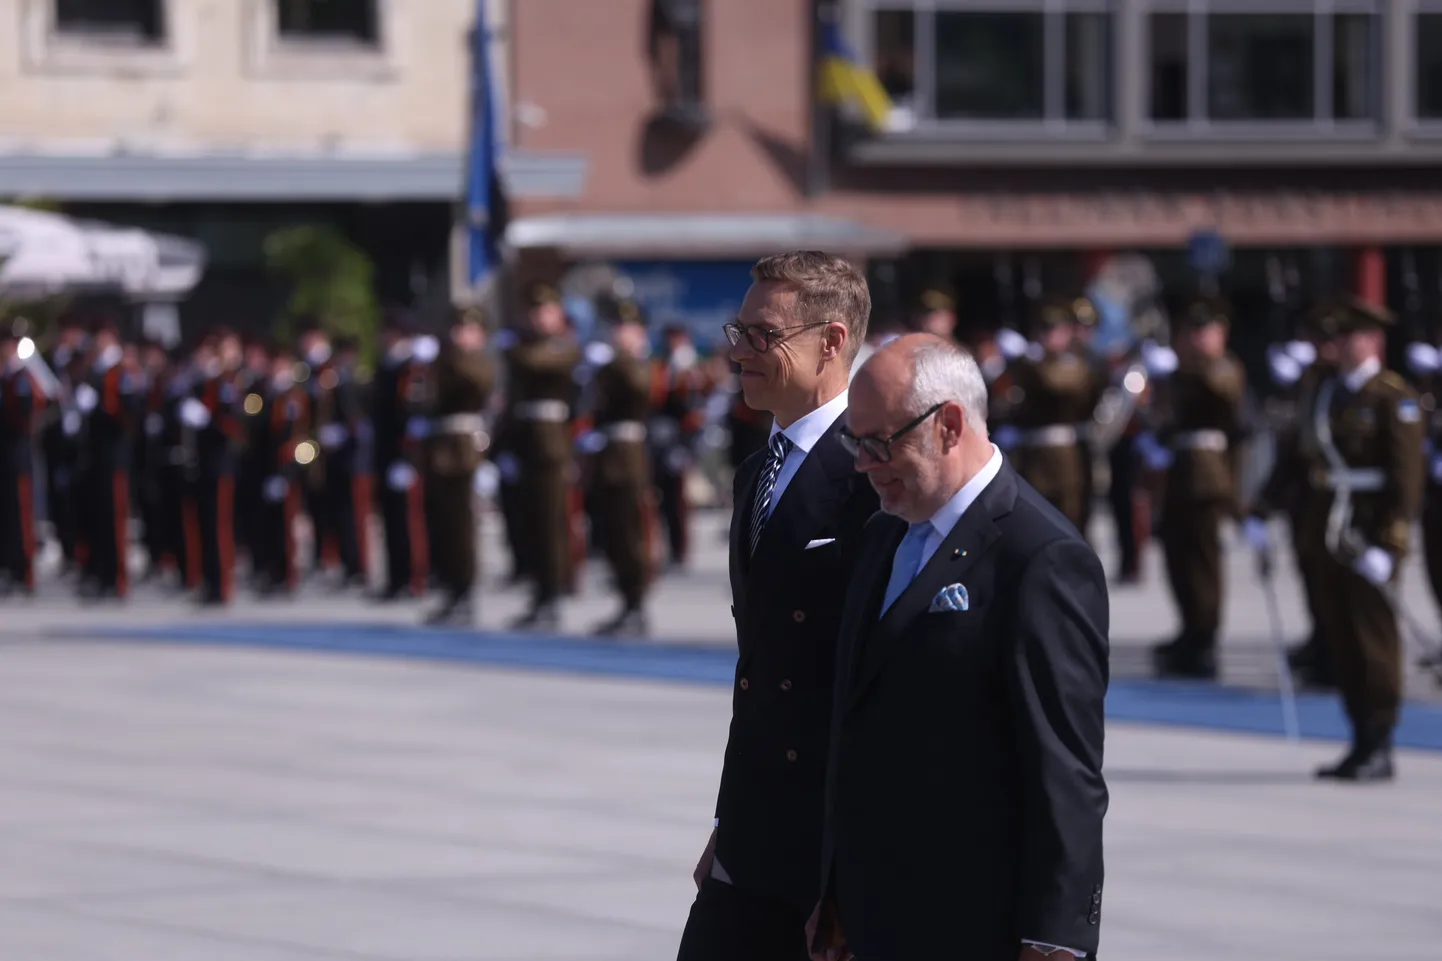 Soome president Alexander Stubb Vabaduse väljakul.